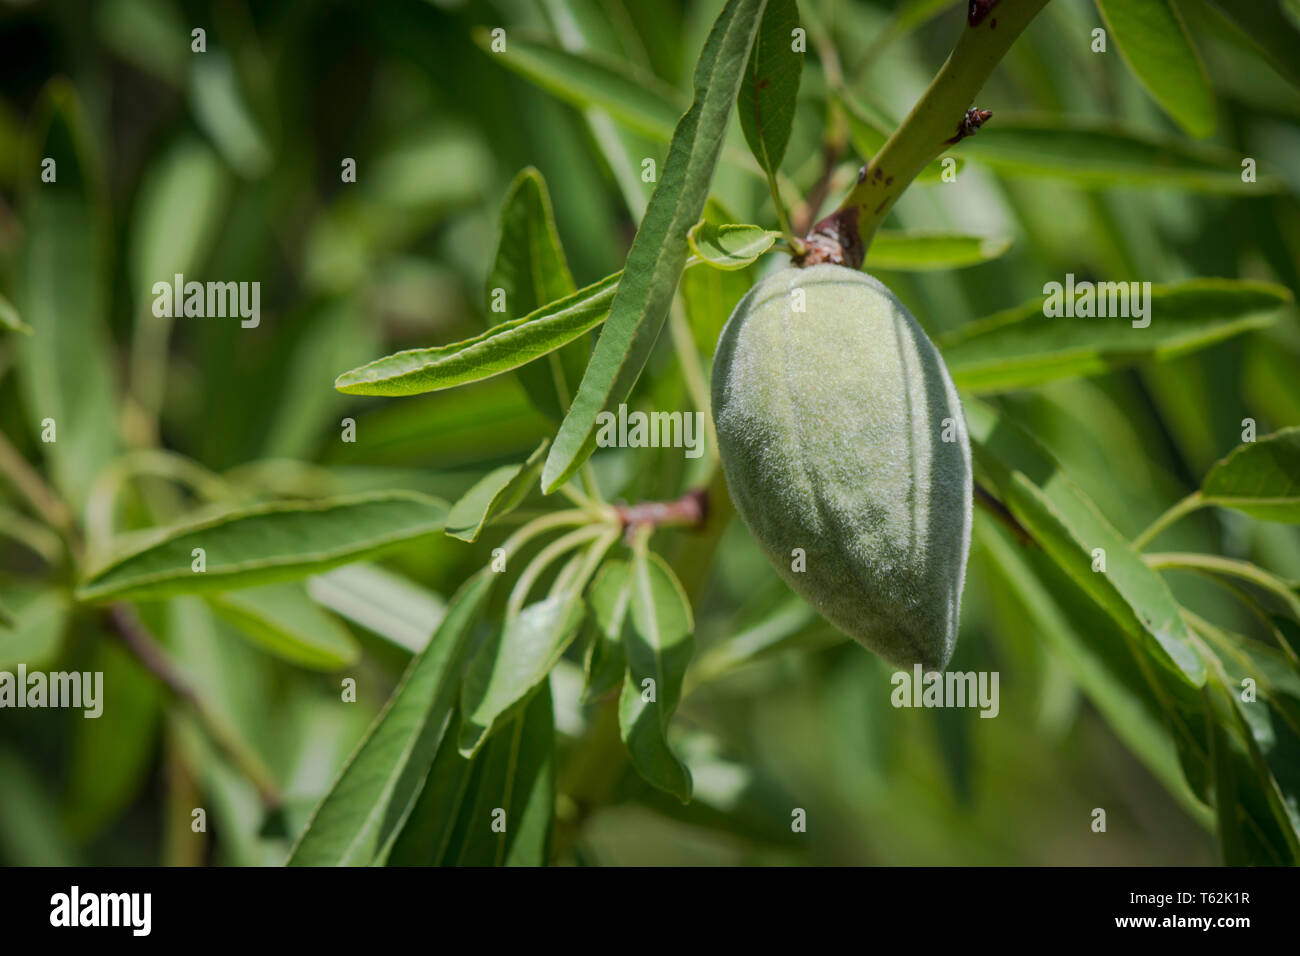 Junge unreife Mandel Früchte am Baum, Andalusien, Spanien. Stockfoto